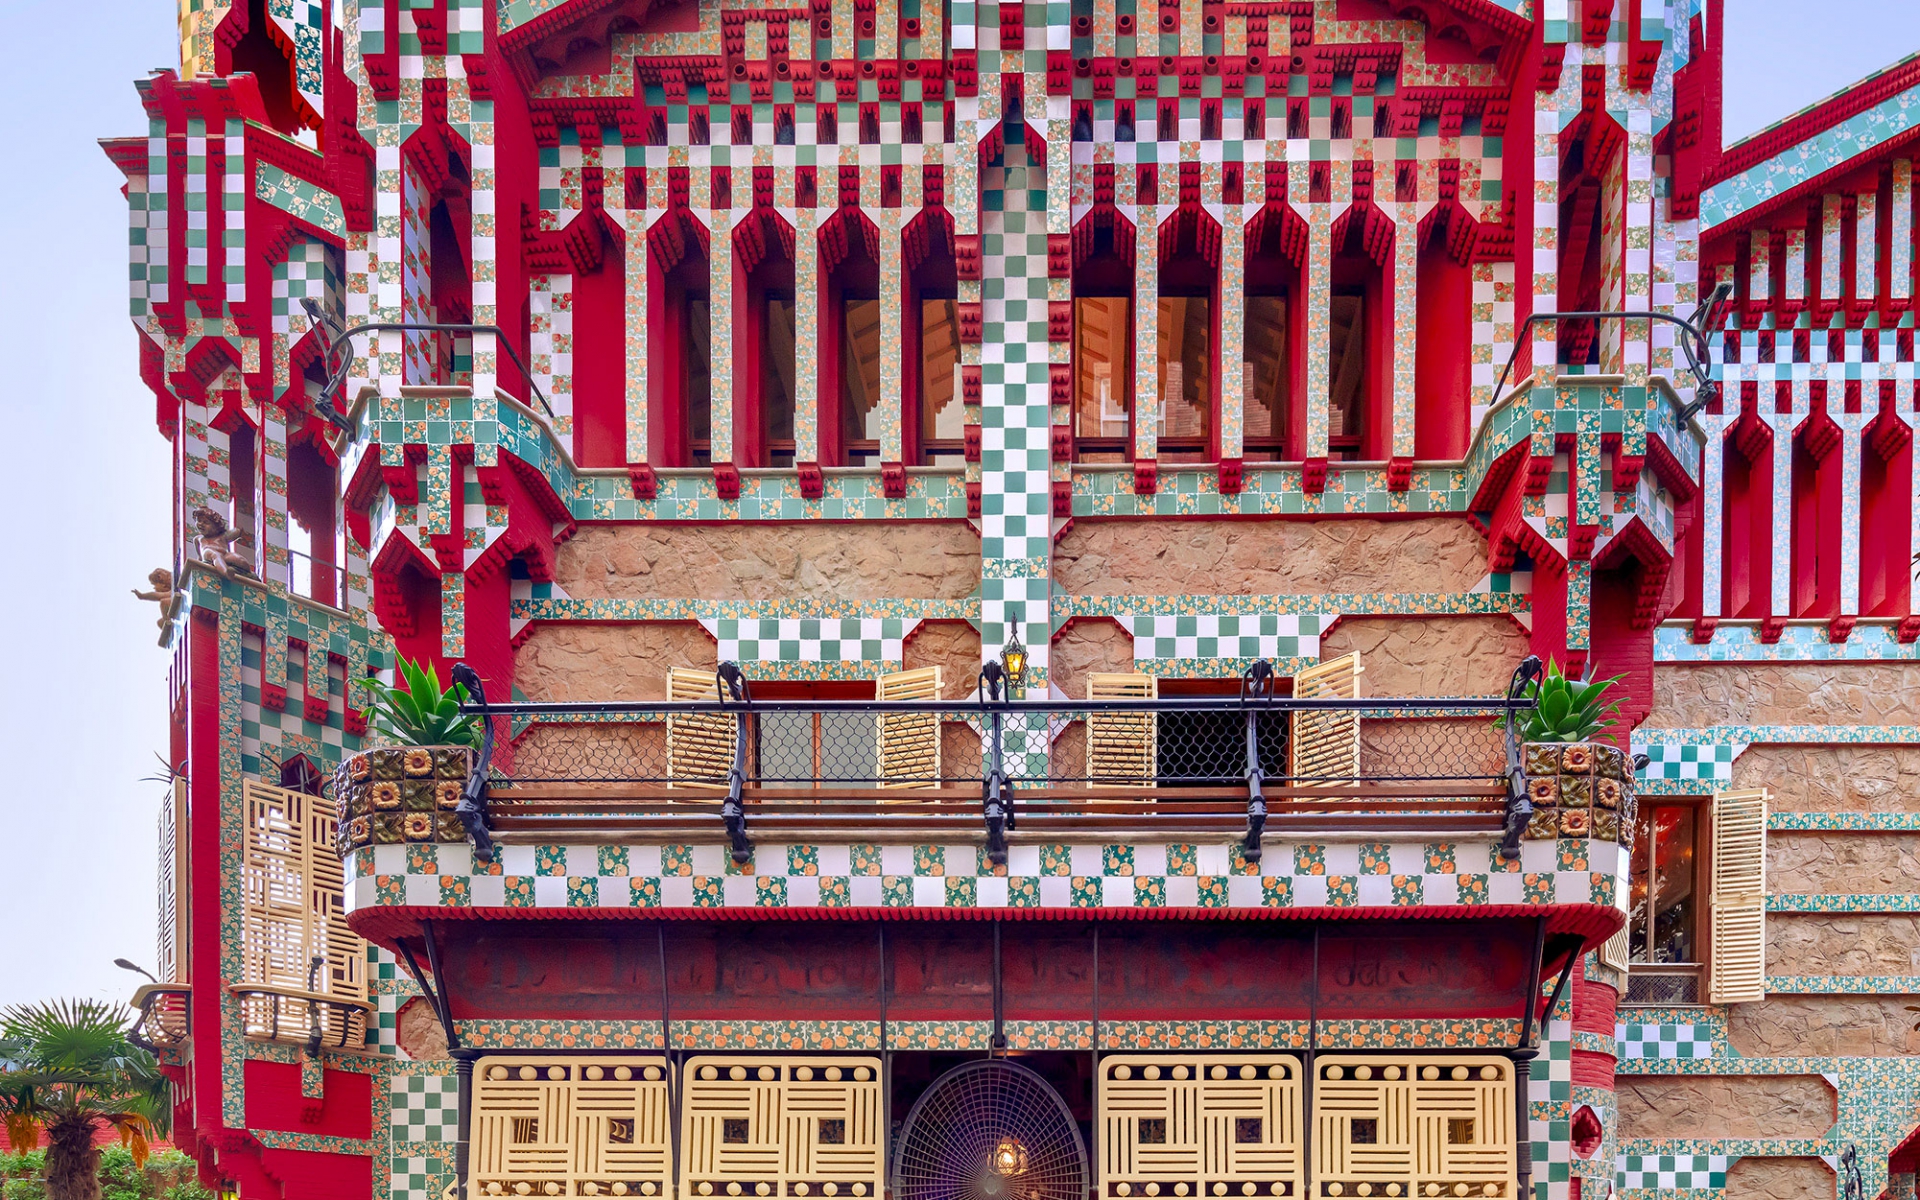 Adentre-se na arquitetura exuberante da Casa Vicens de Gaudí